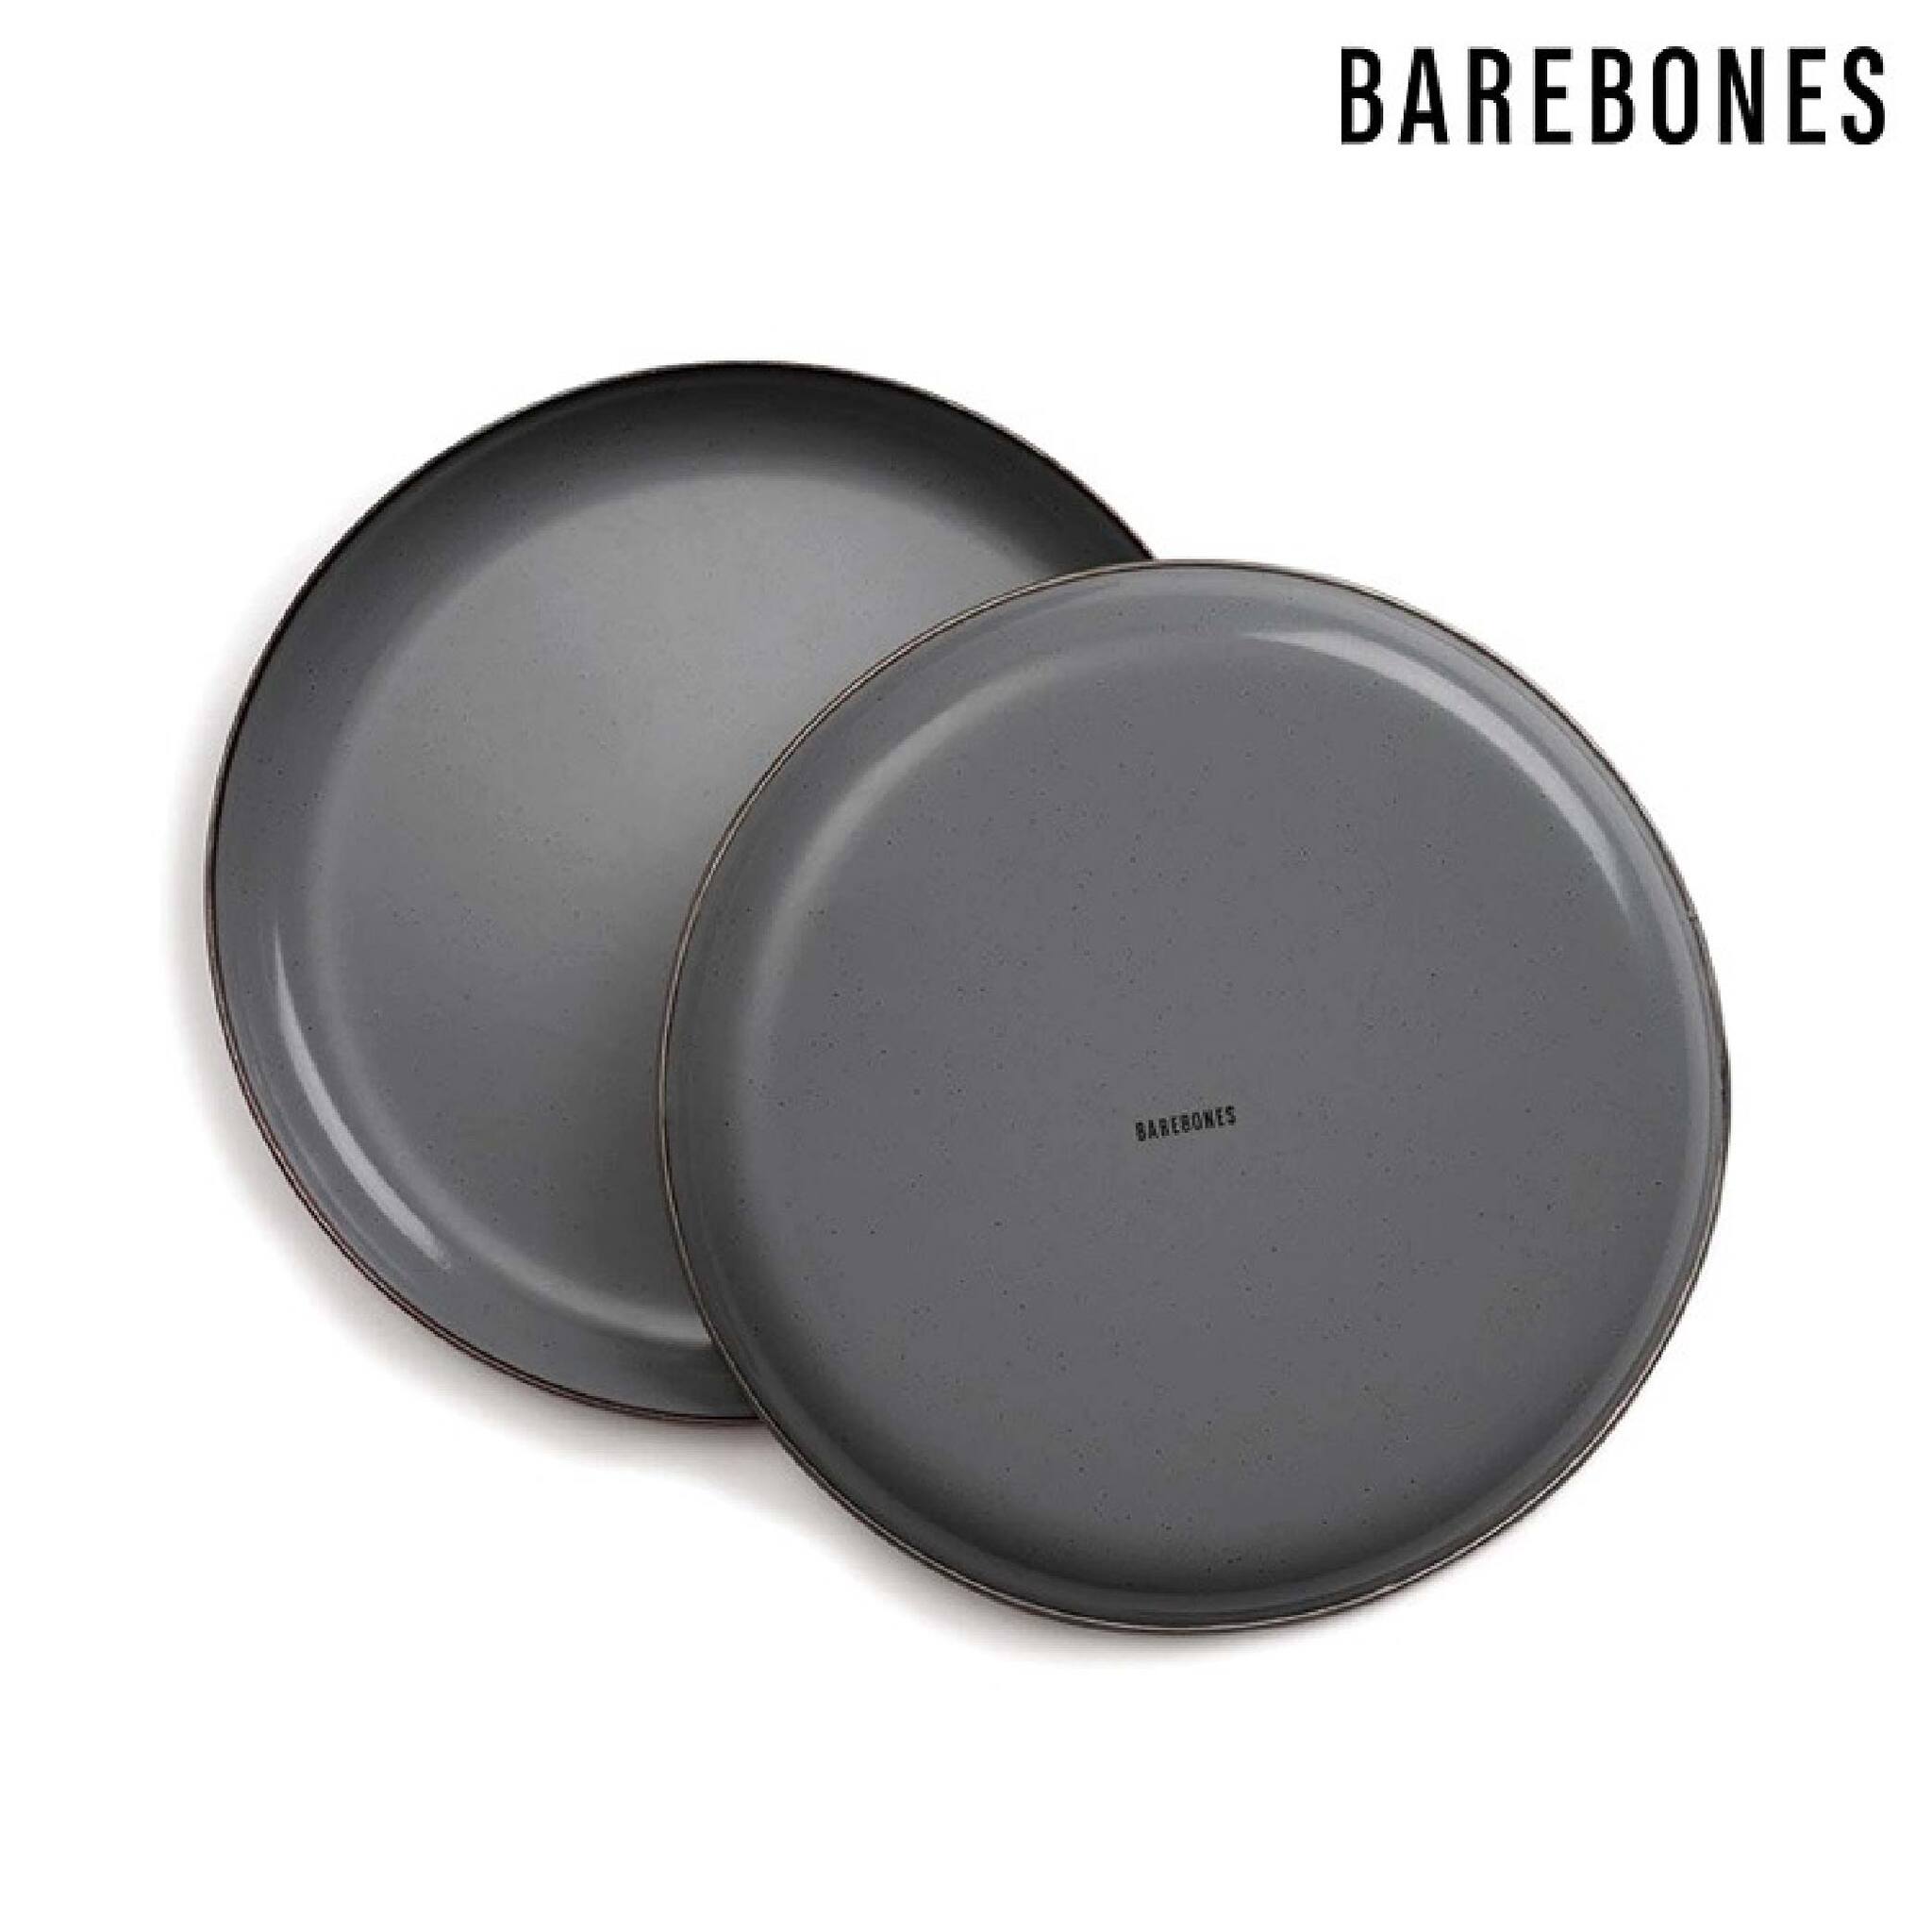 Barebones 琺瑯沙拉盤組 兩入一組 石灰 CKW-374